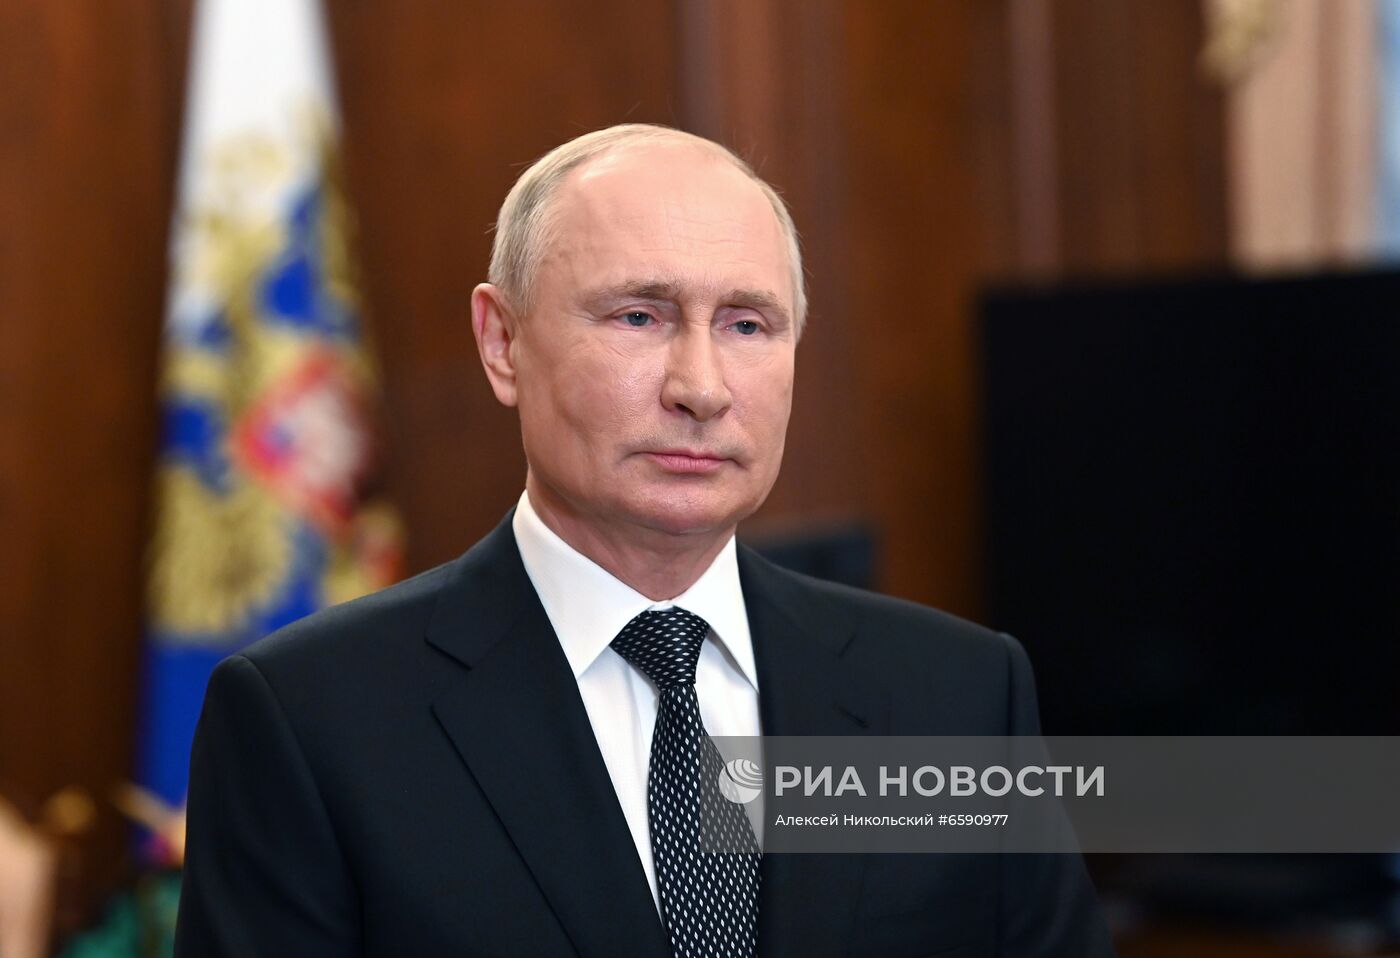 Обращение президента РФ В. Путина к участникам конференции руководителей прокуратур европейских государств